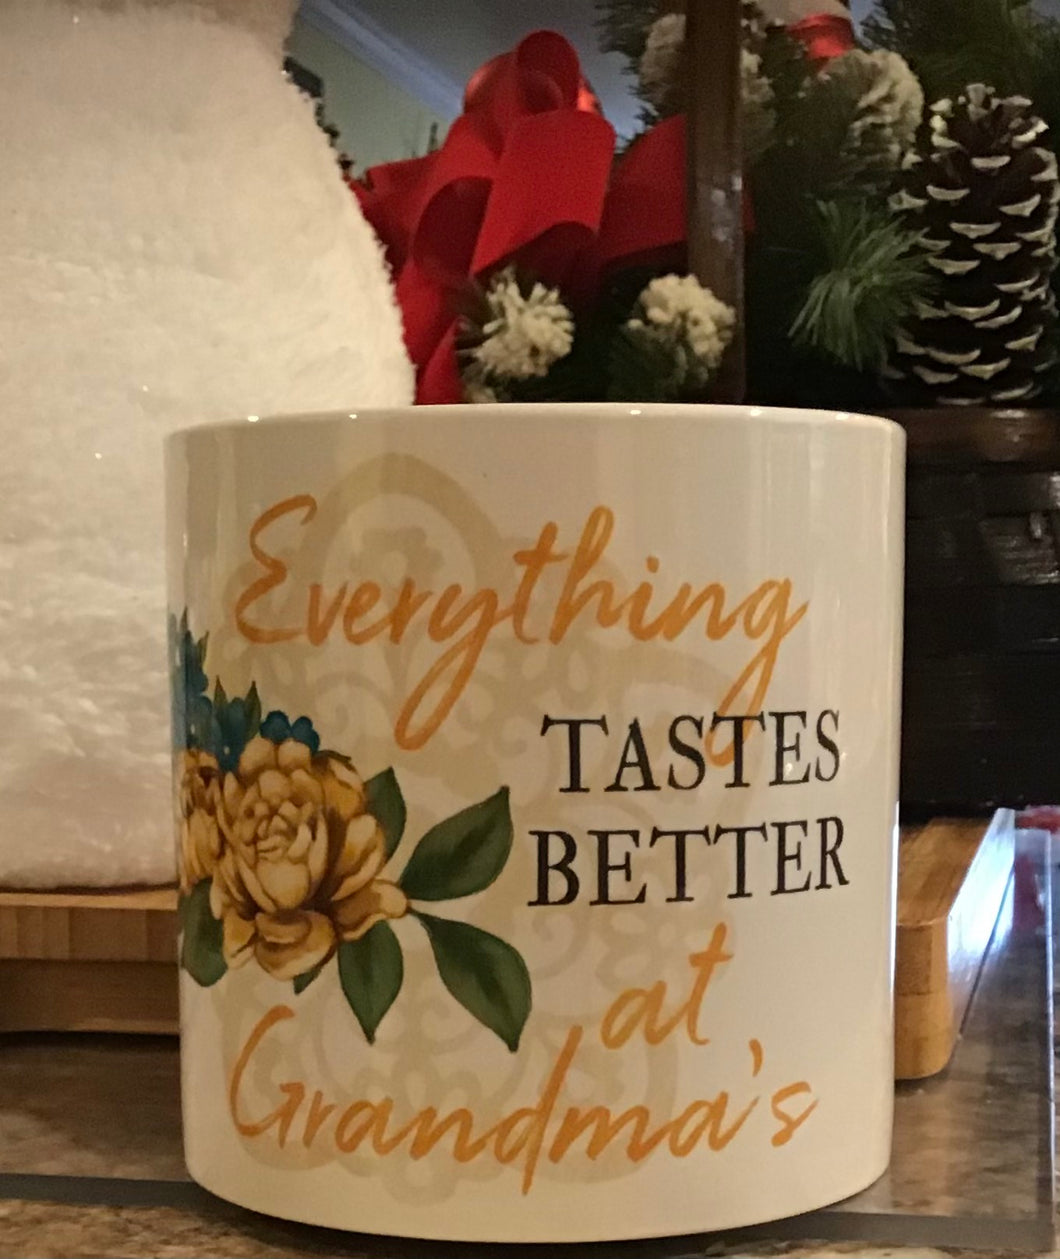 Everything Tastes Better at Grandma’s Utensil Holder